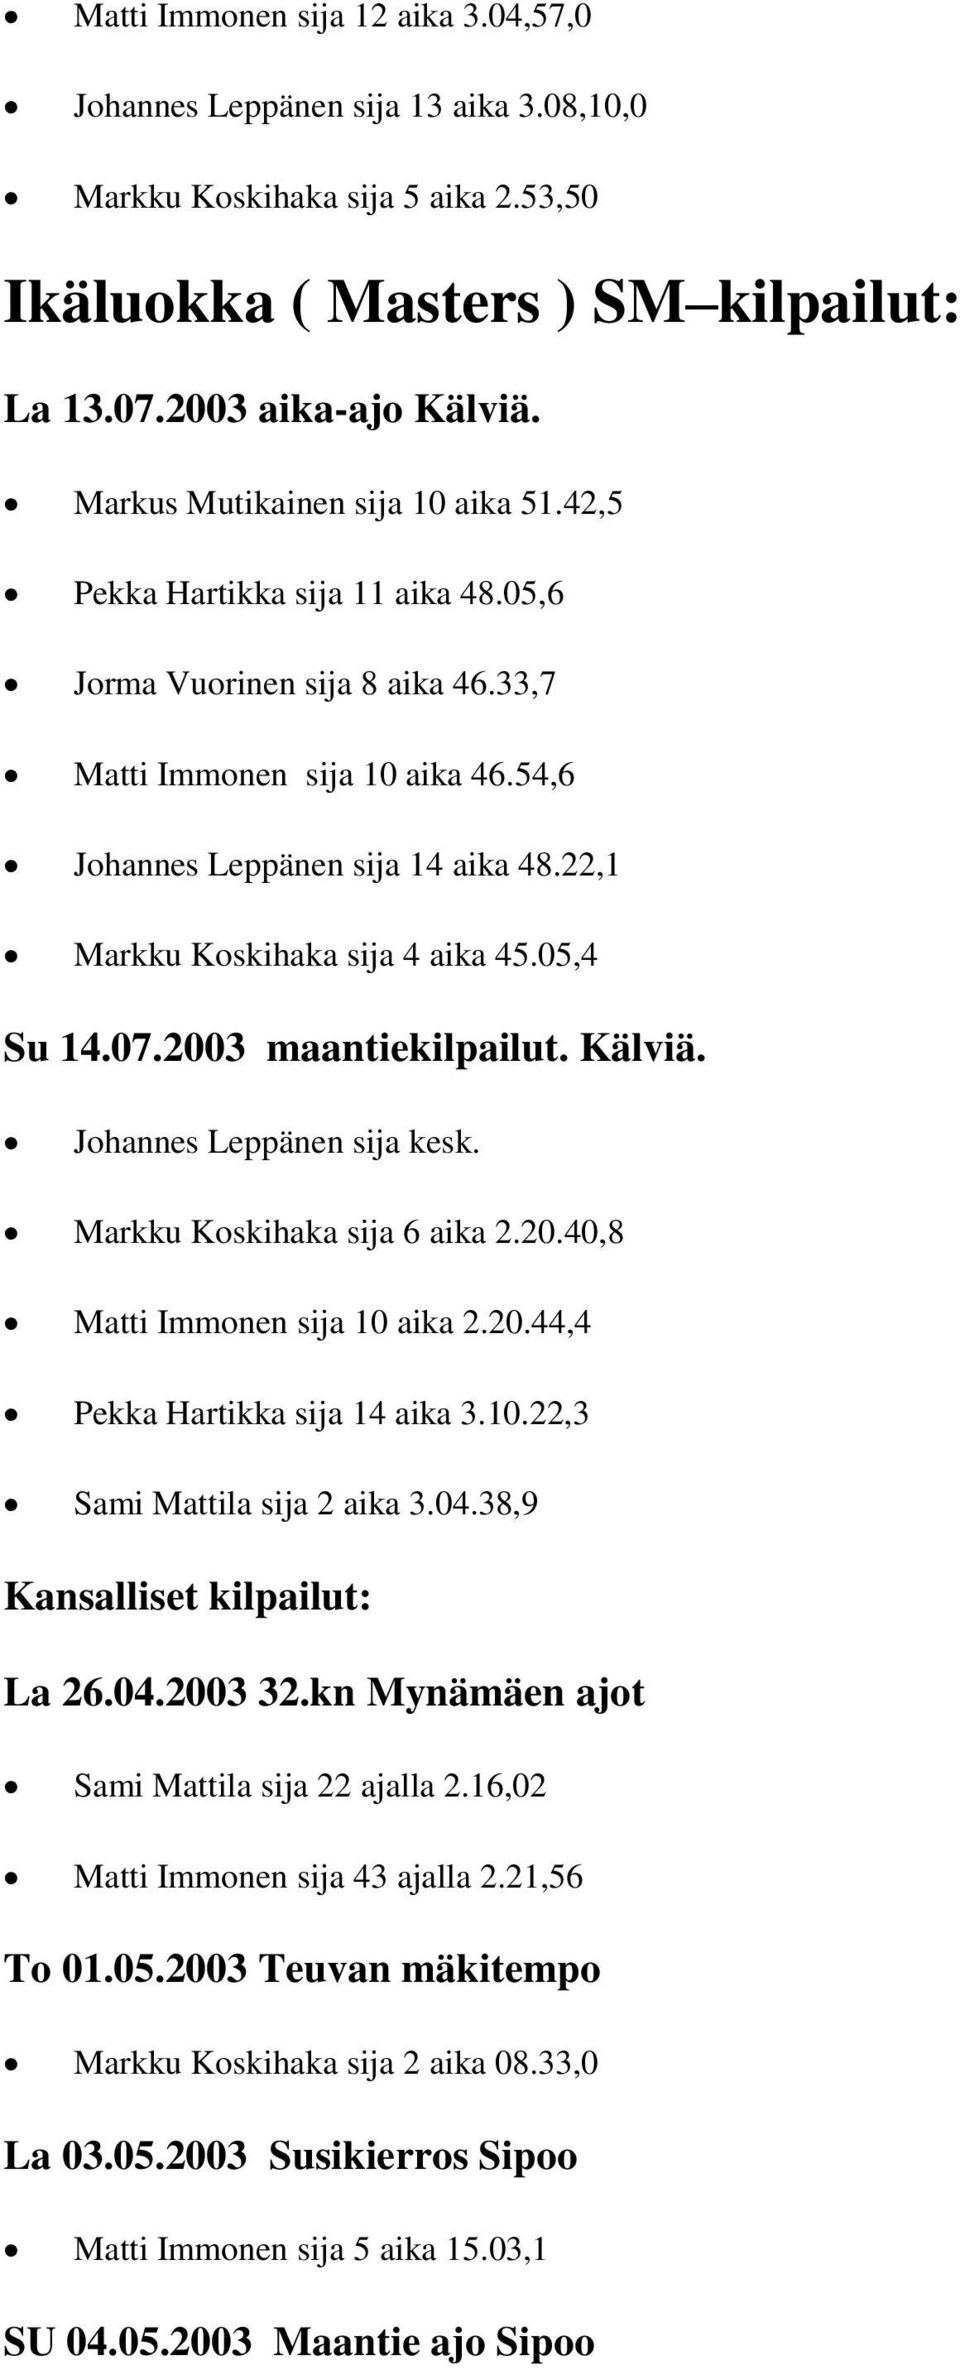 22,1 Markku Koskihaka sija 4 aika 45.05,4 Su 14.07.2003 maantiekilpailut. Kälviä. Johannes Leppänen sija kesk. Markku Koskihaka sija 6 aika 2.20.40,8 Matti Immonen sija 10 aika 2.20.44,4 Pekka Hartikka sija 14 aika 3.